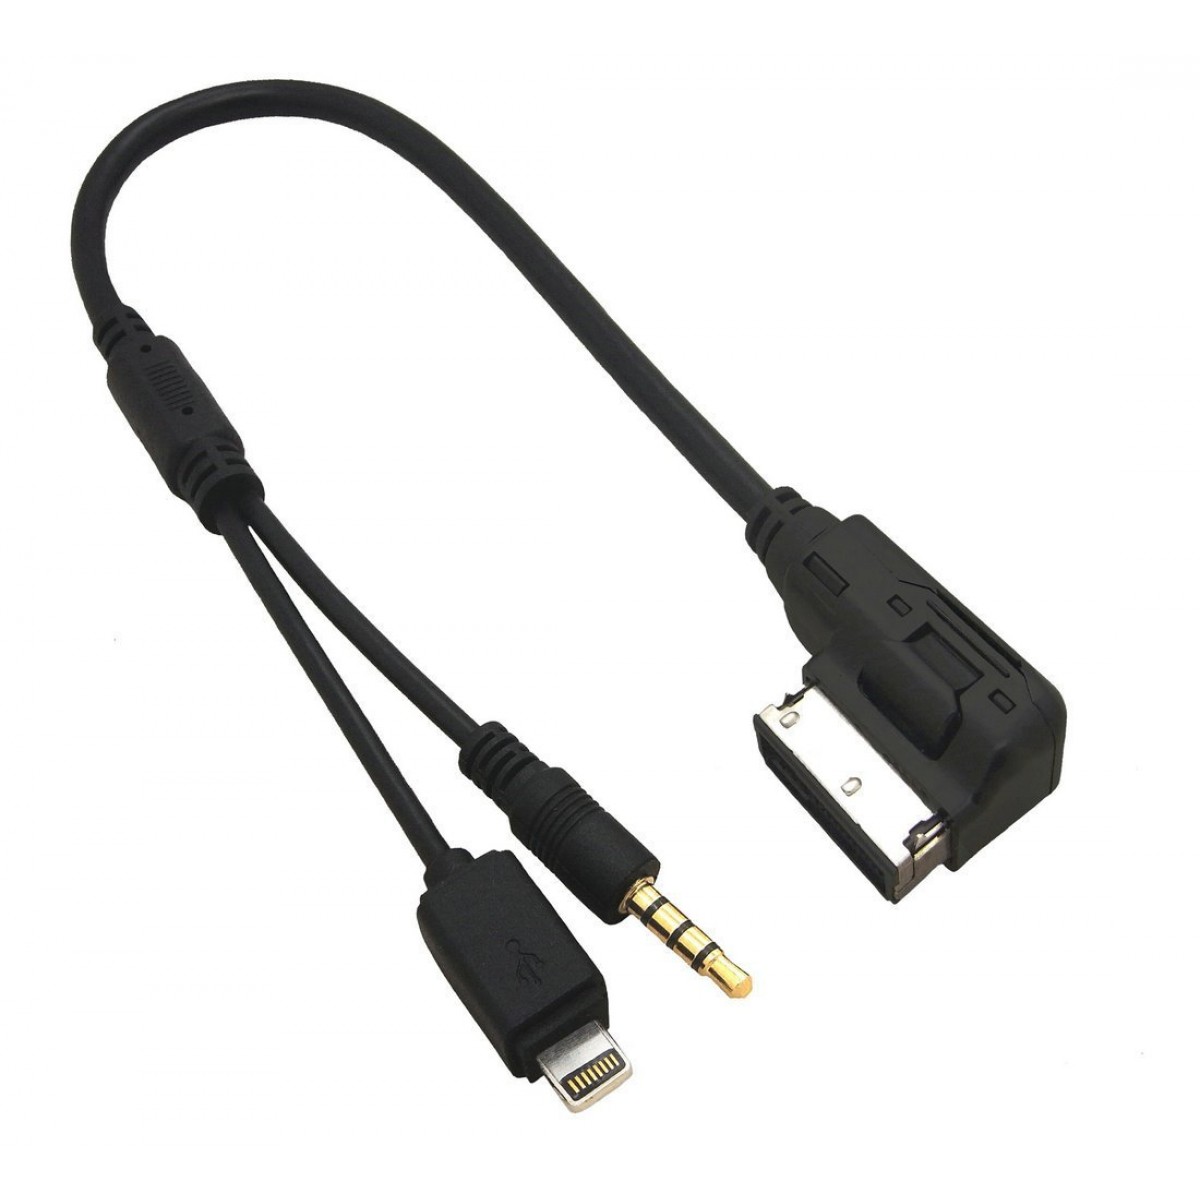 HQRP Mdi Ami Mmi Interface USB Aux Kabel Für Audi A1-A5 A6 A7 A8 Q3-Q7 S1-S7 